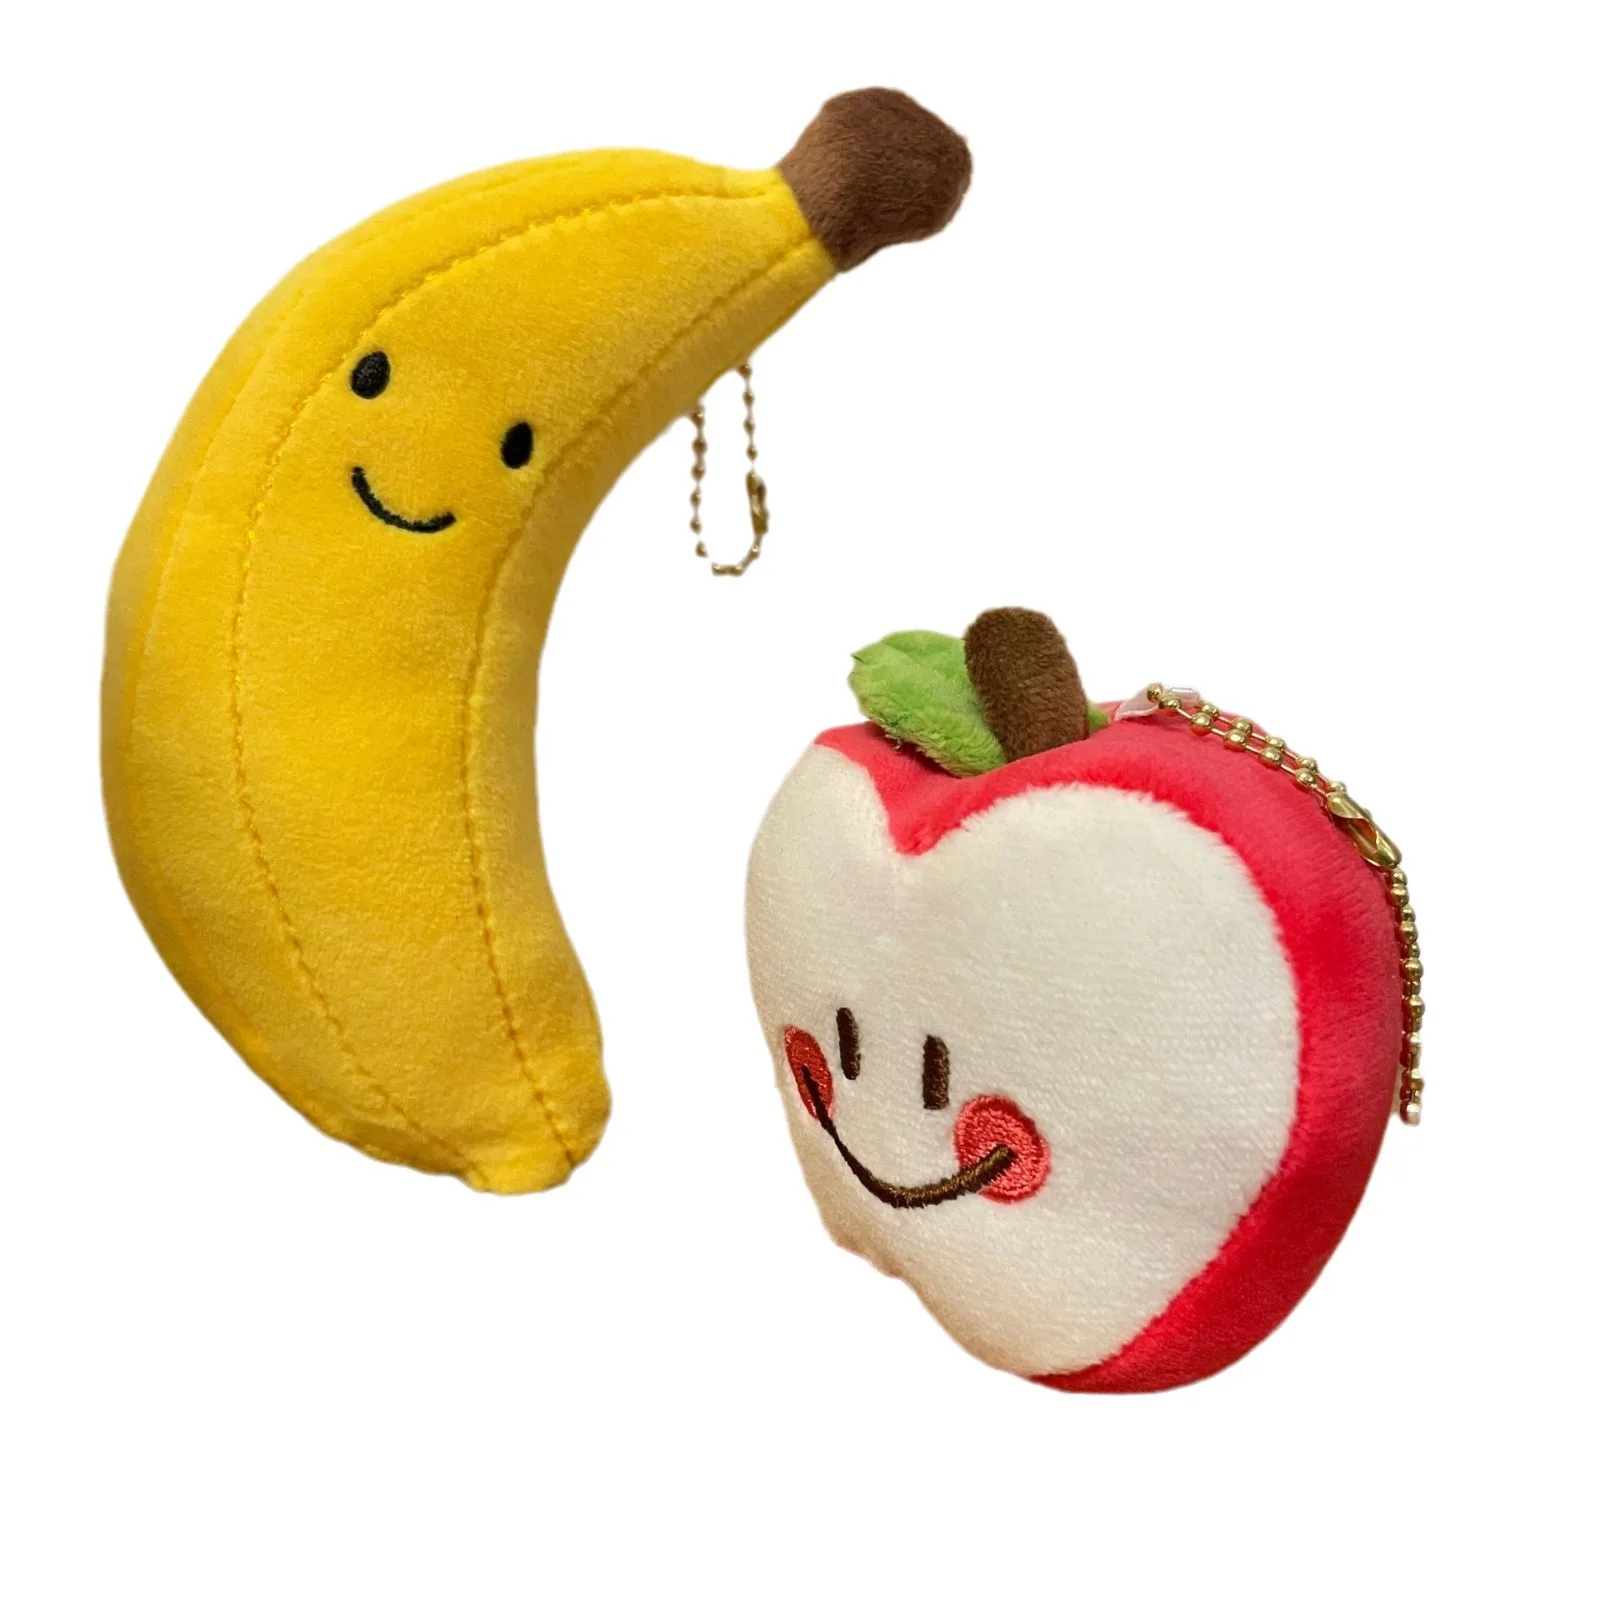 

10 см милая плюшевая игрушка в виде фруктов, мультяшный банан, яблоко, искусственный дизайн, детские подарки